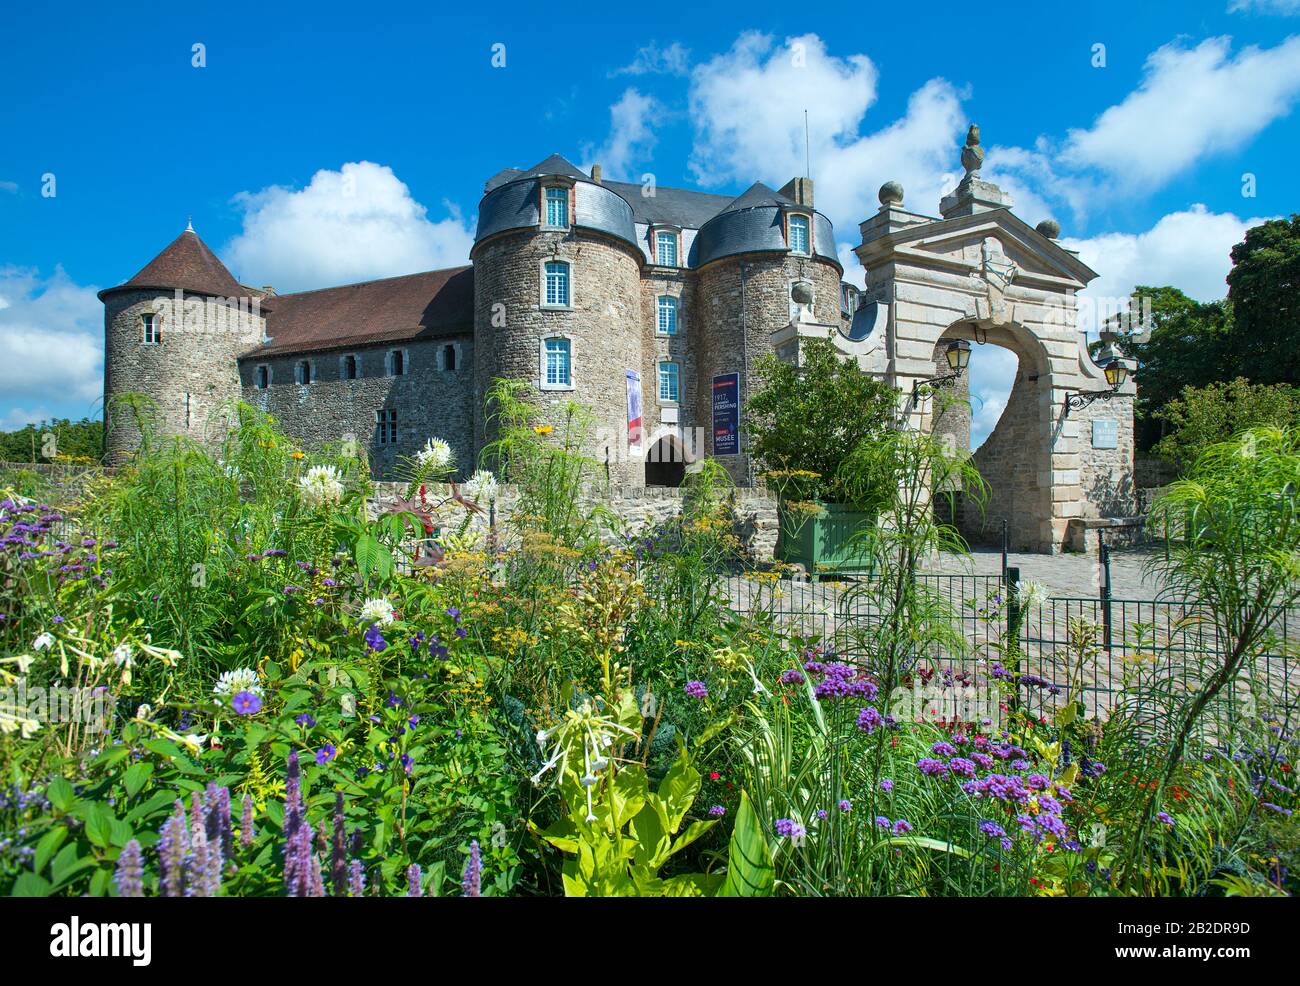 Entrance to Castle Museum, Chateau Boulogne sur Mer, France Stock Photo ...